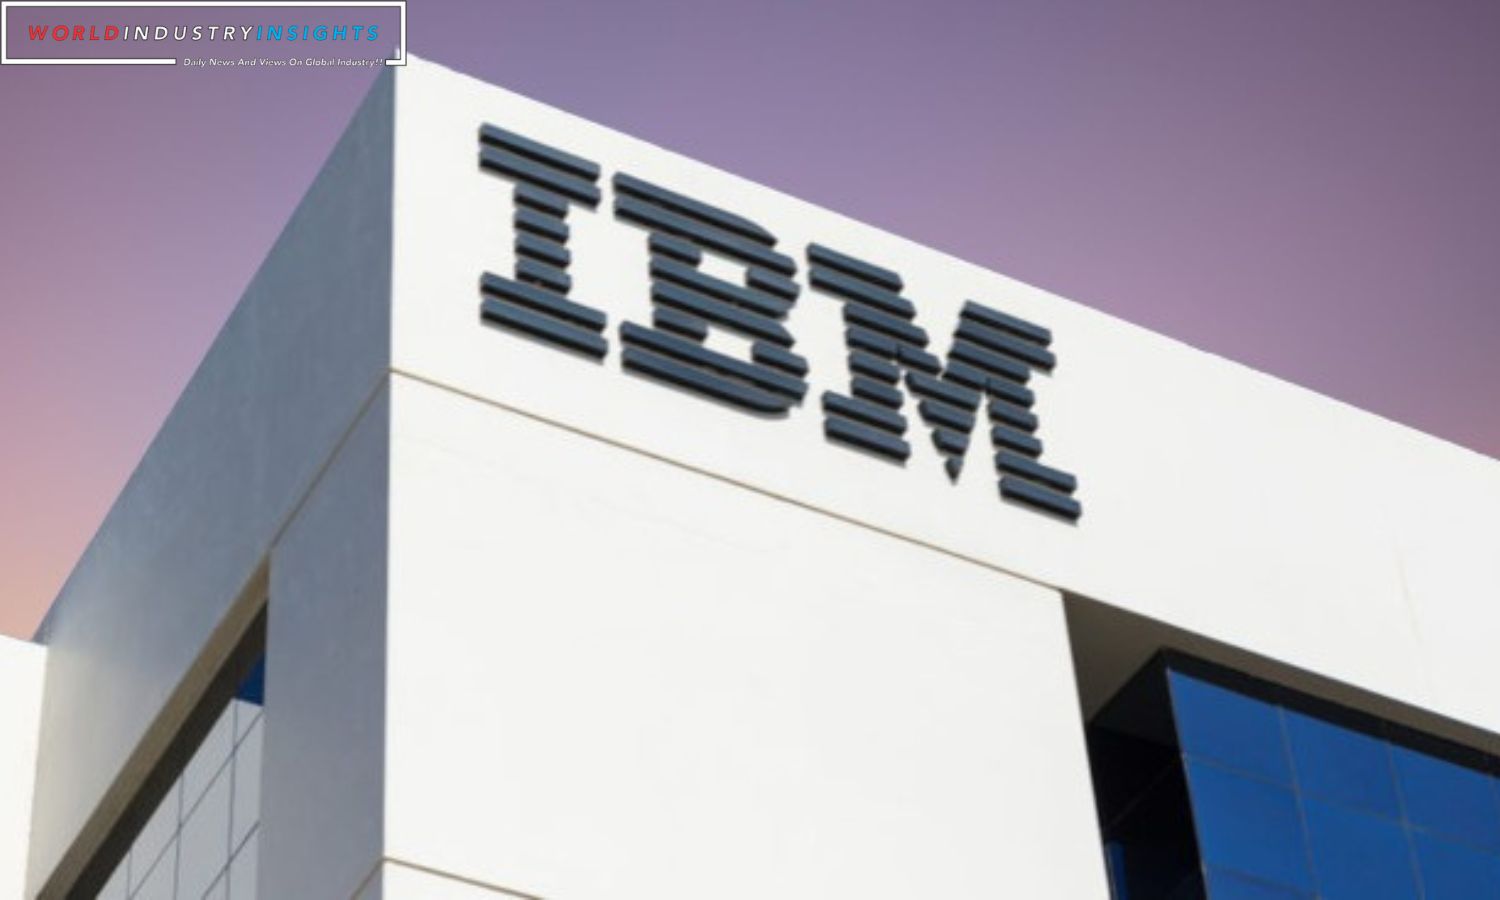 IBM Surpasses Q3 Expectations